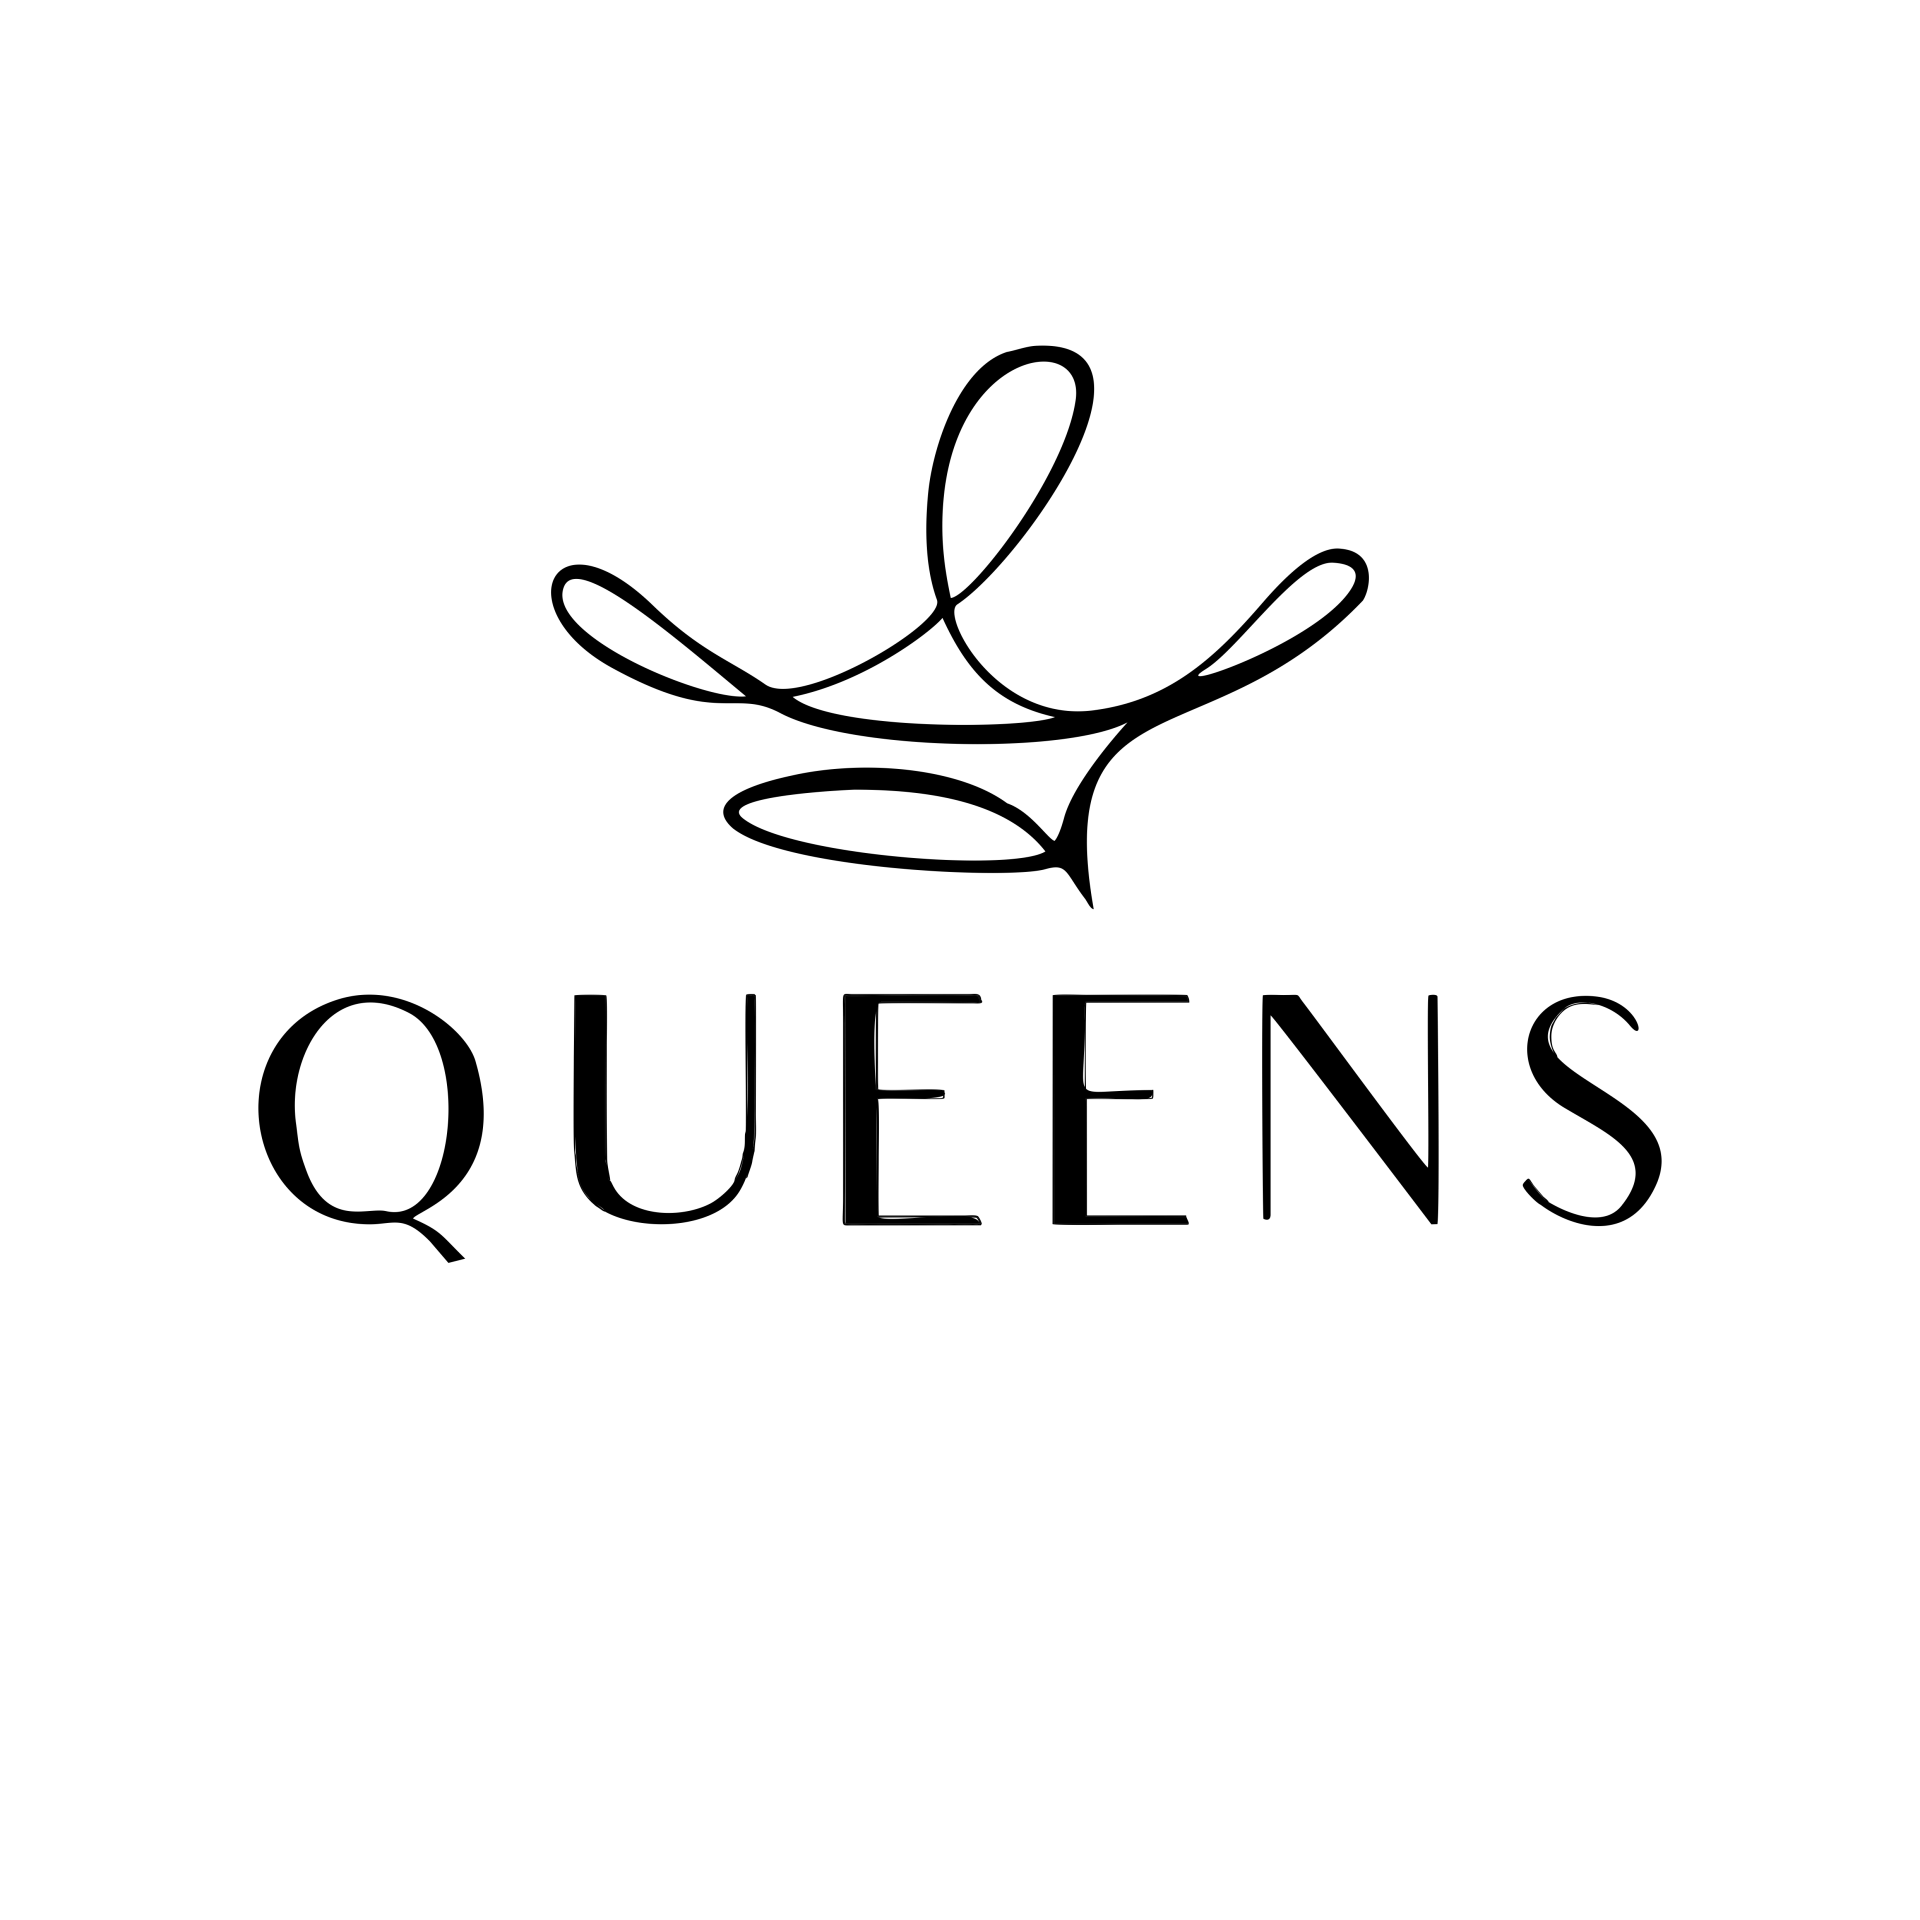 queens : Brand Short Description Type Here.